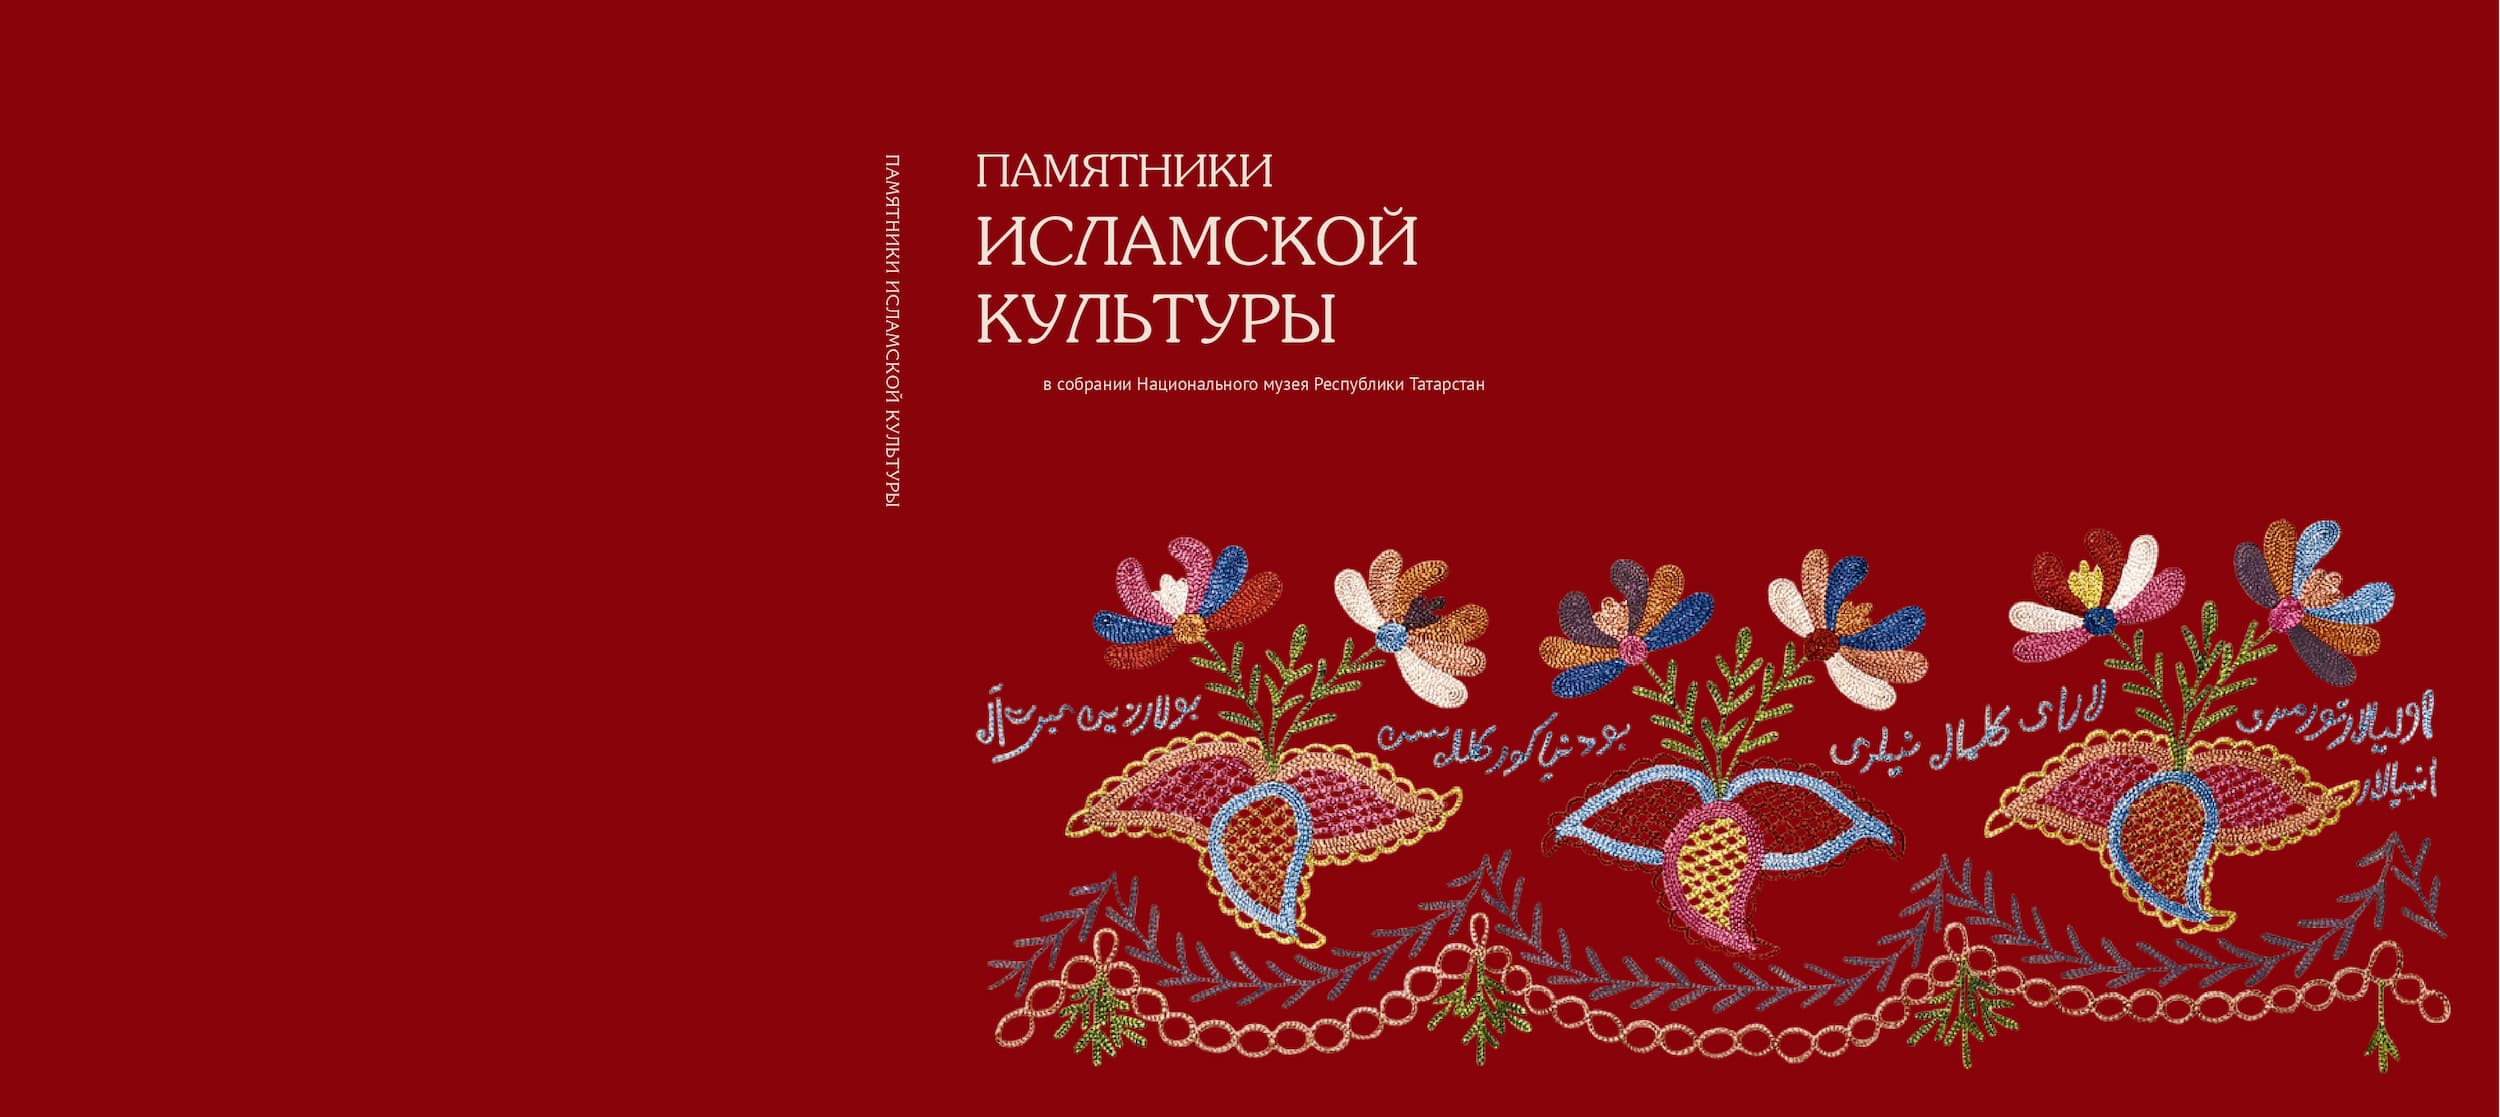 В Москве презентуют каталог из собрания Национального музея Республики Татарстан»